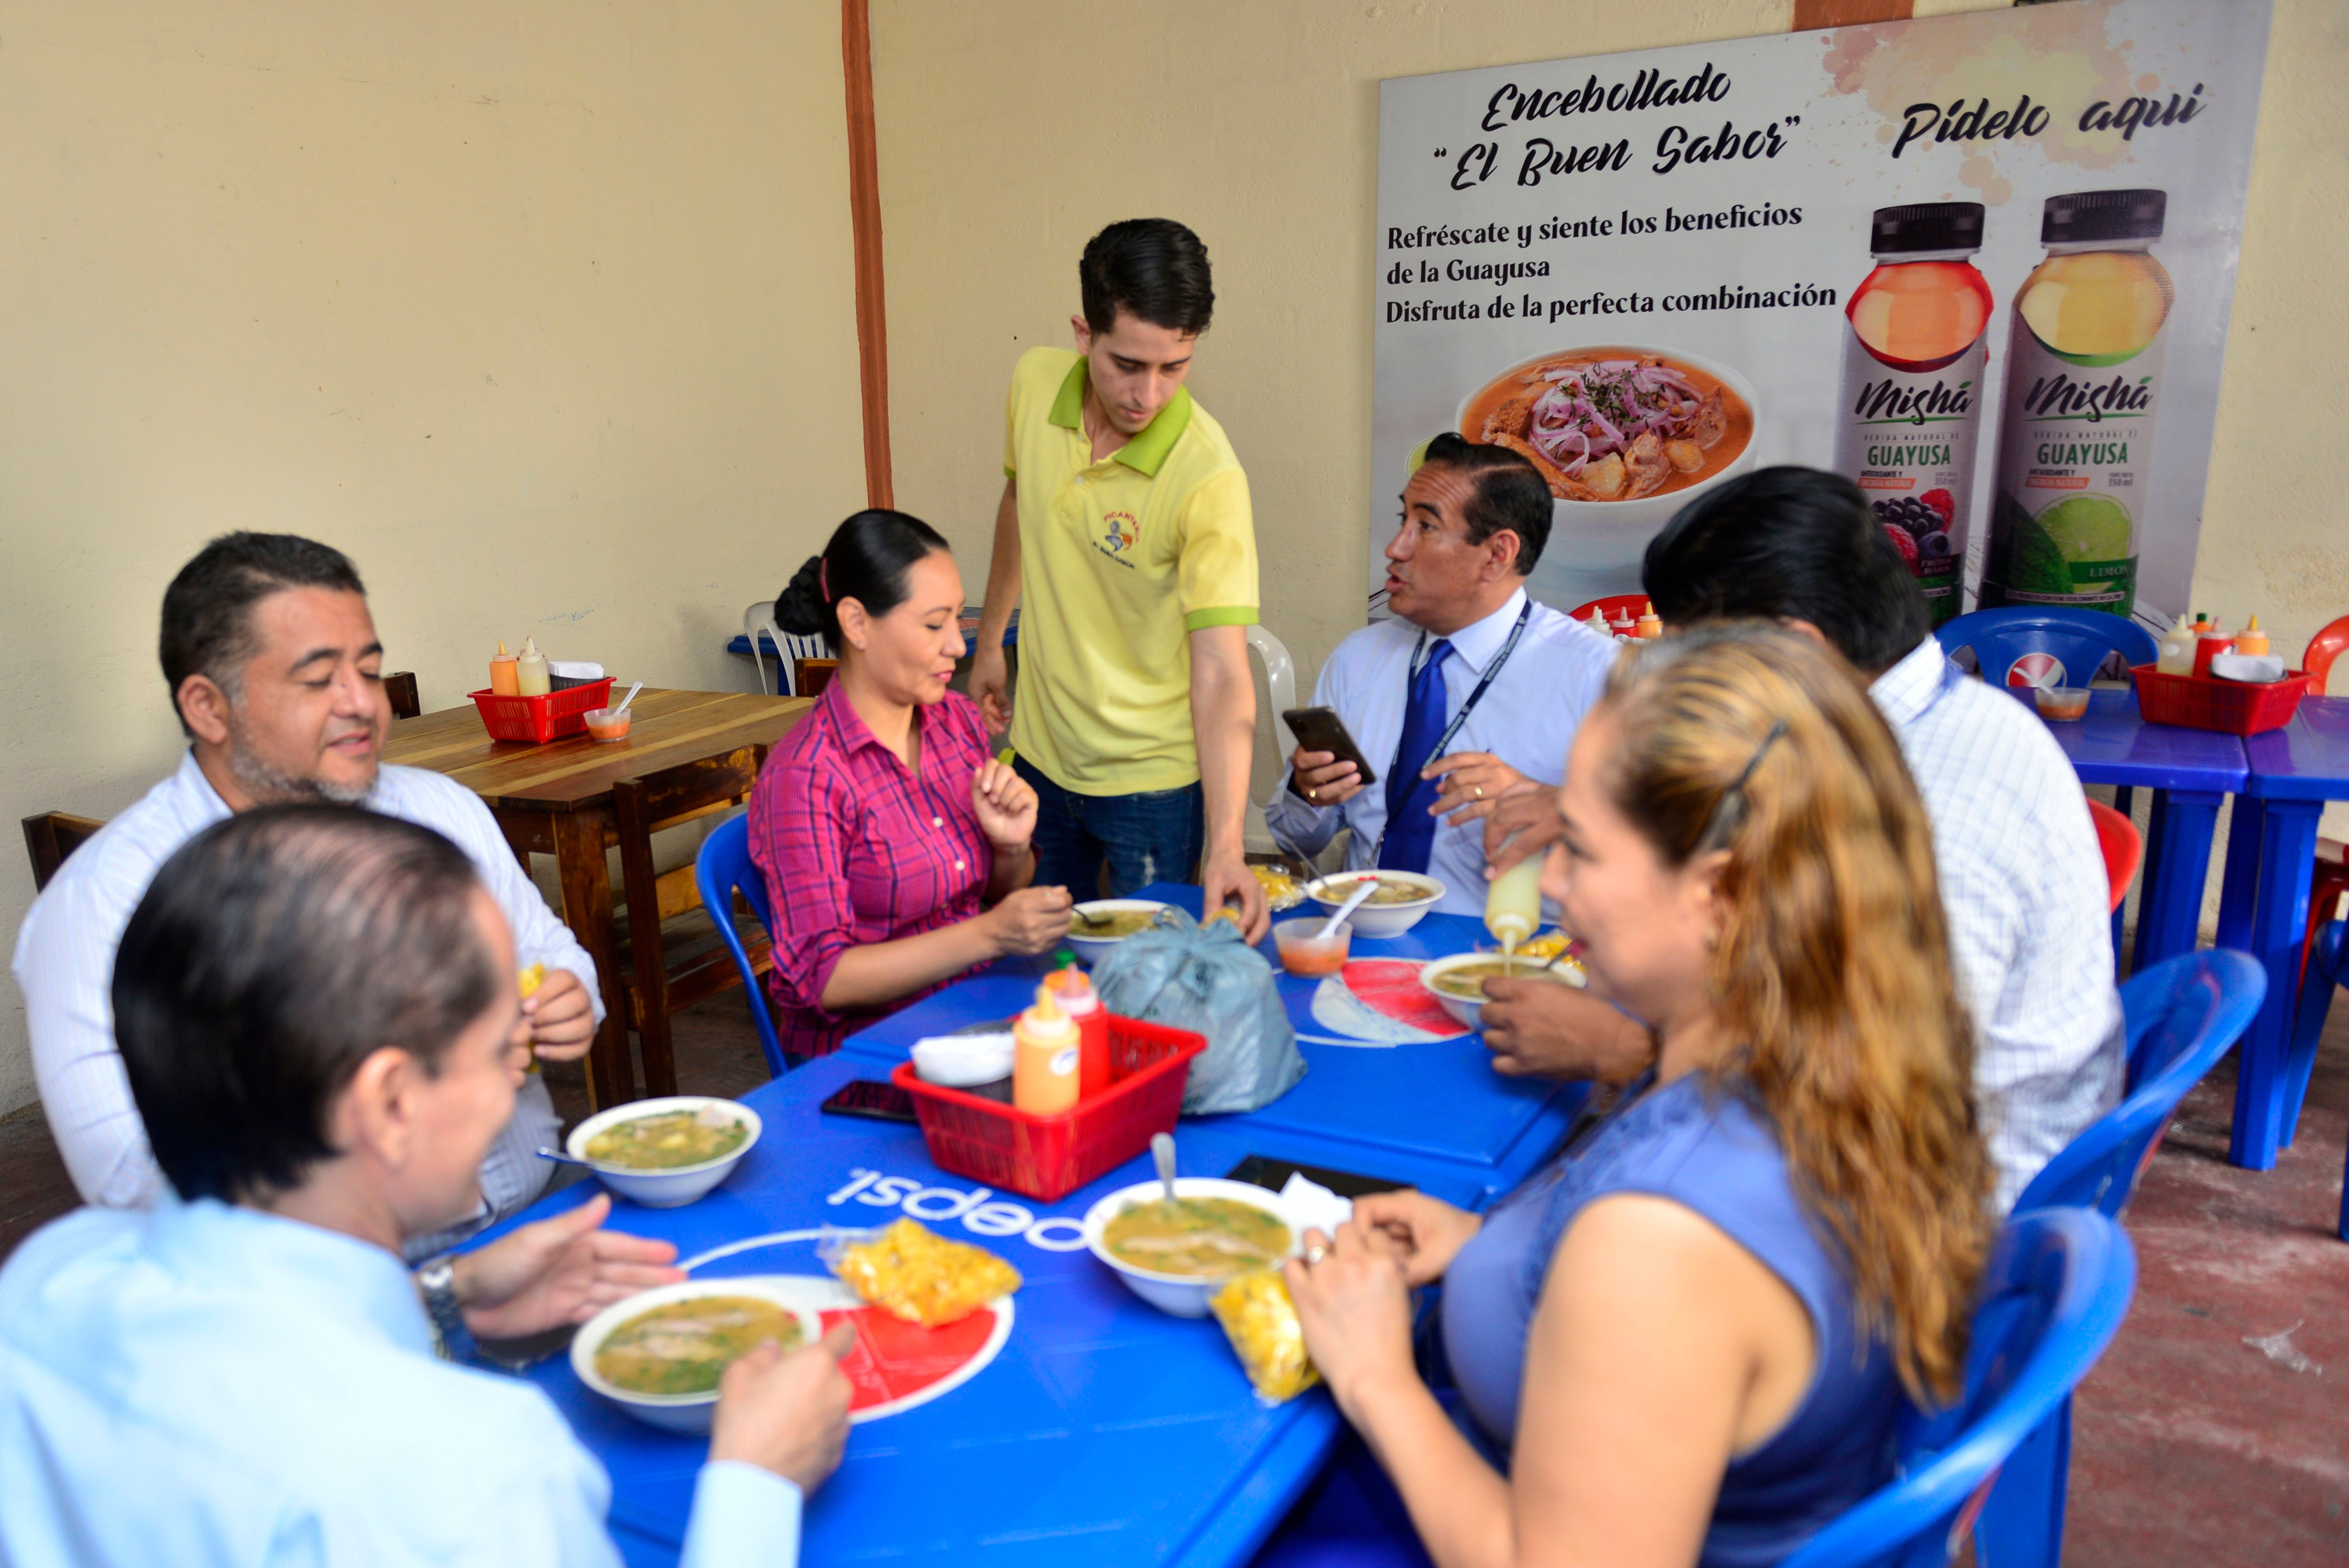 El encebollado y el cebiche, los más vendidos en Guayaquil en el debut mundialista; negocios aumentaron ventas de esos platos en un 40 %